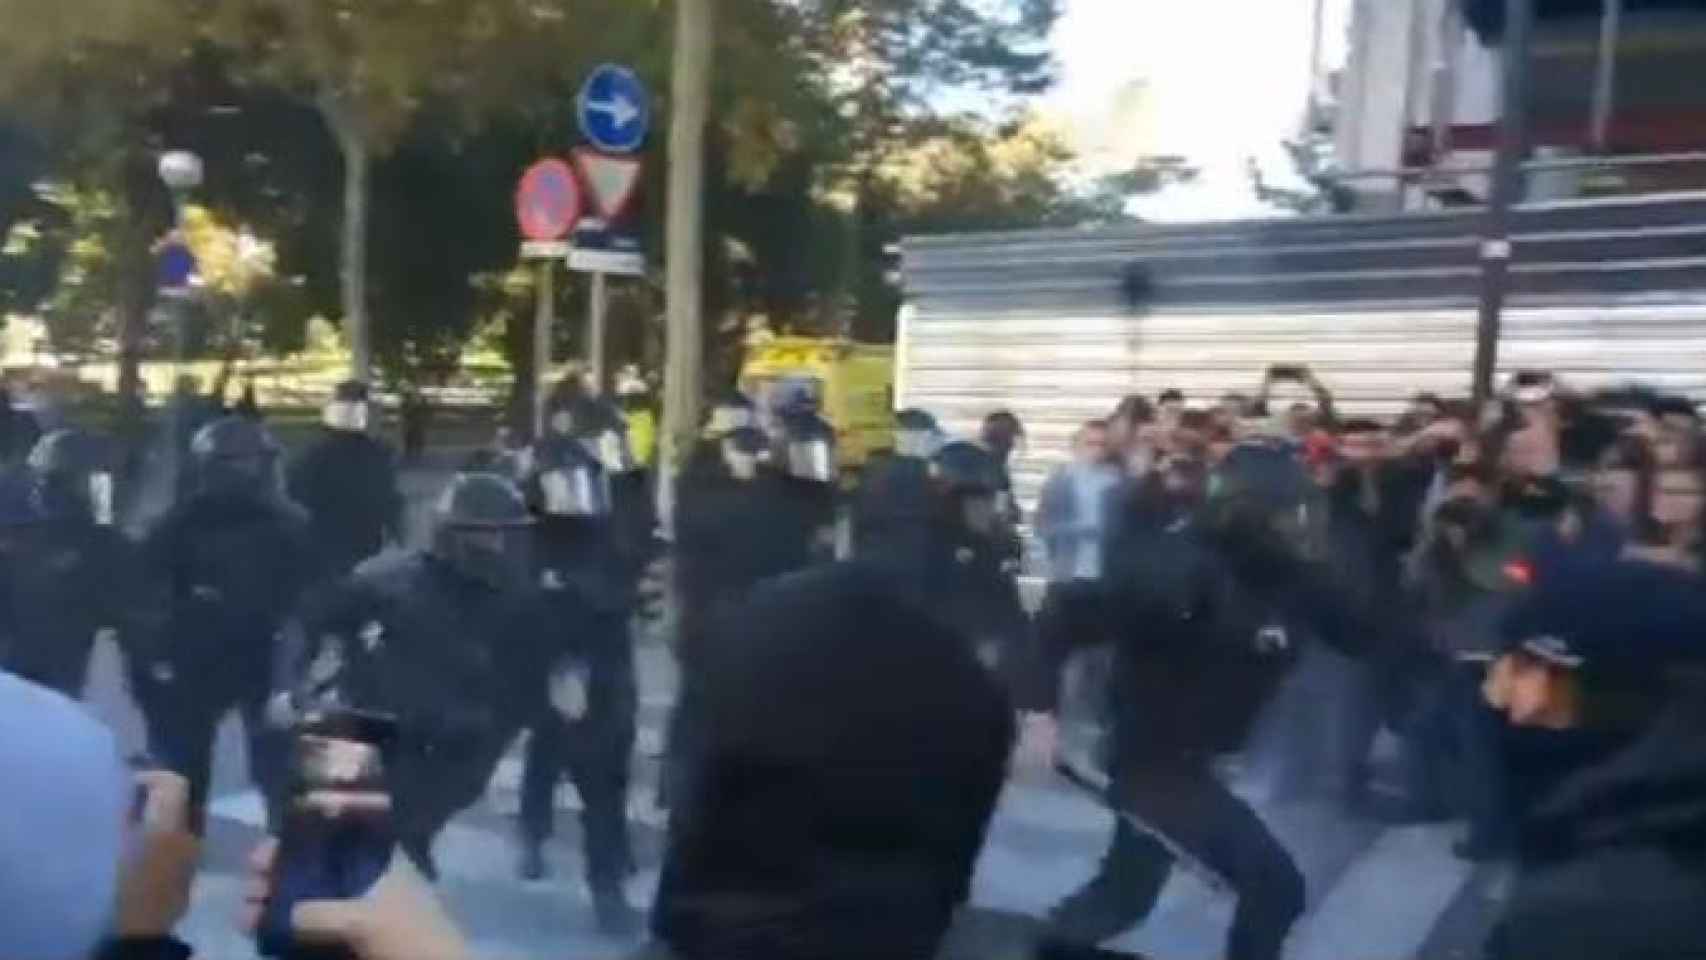 Cargas policiales contra los CDR en la manifestación de Jusapol en Barcelona